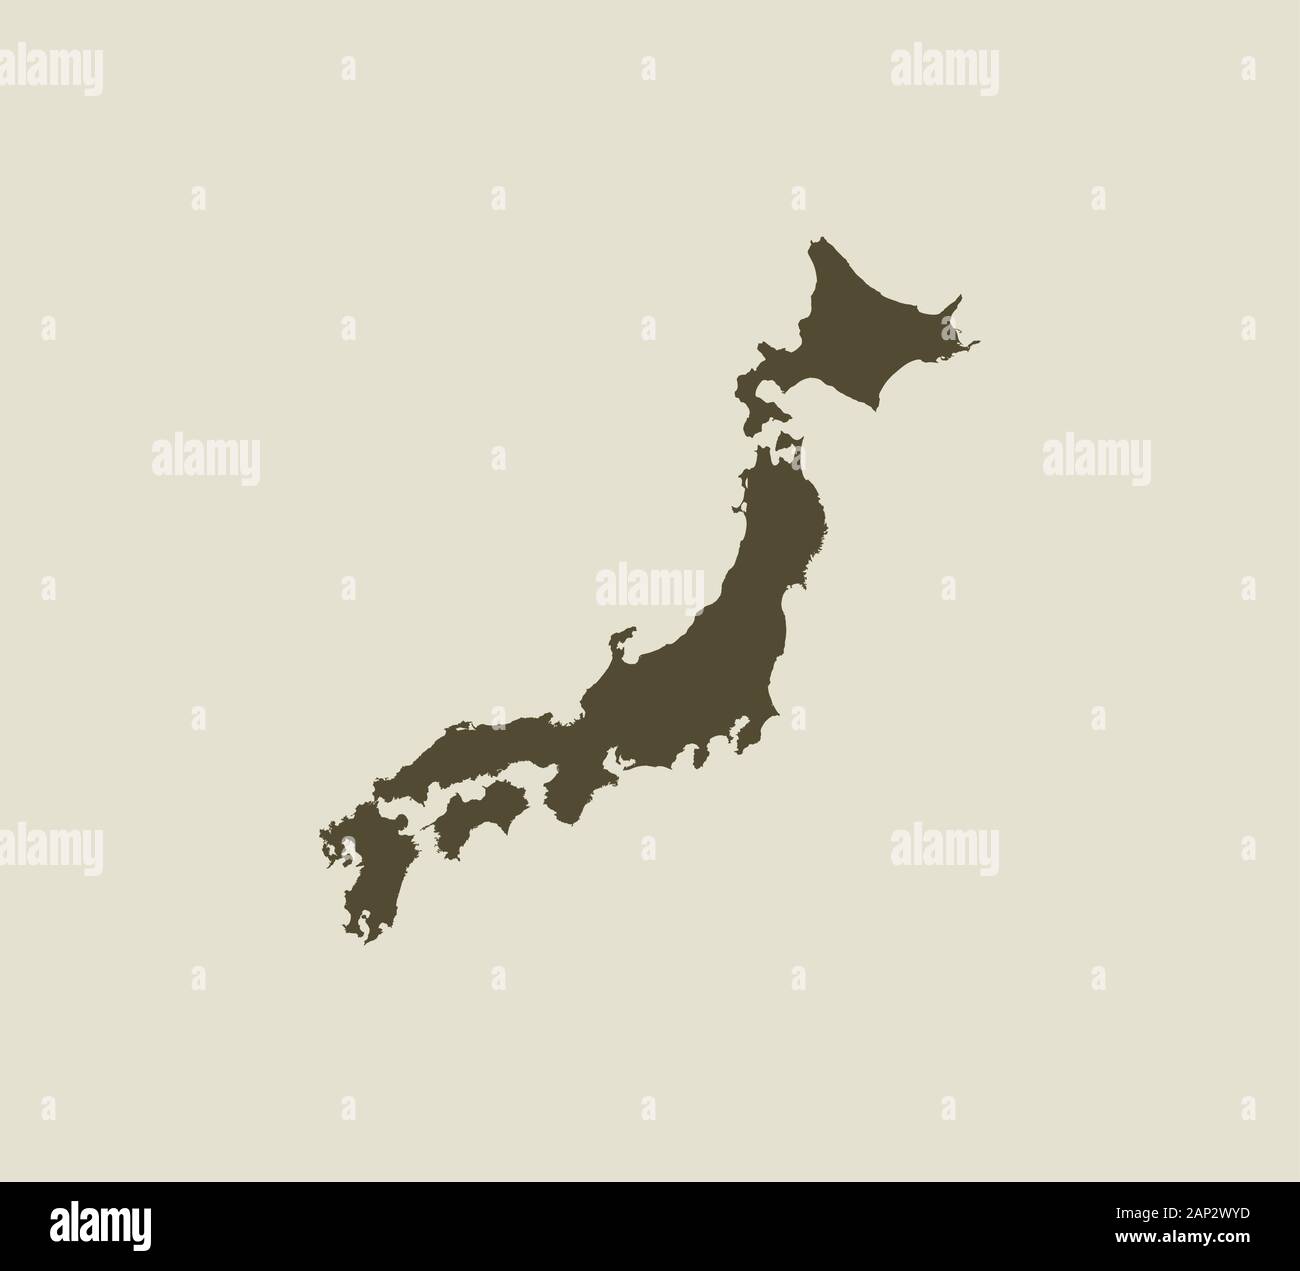 Carte du Japon, sur fond blanc. Illustration vectorielle. Illustration de Vecteur